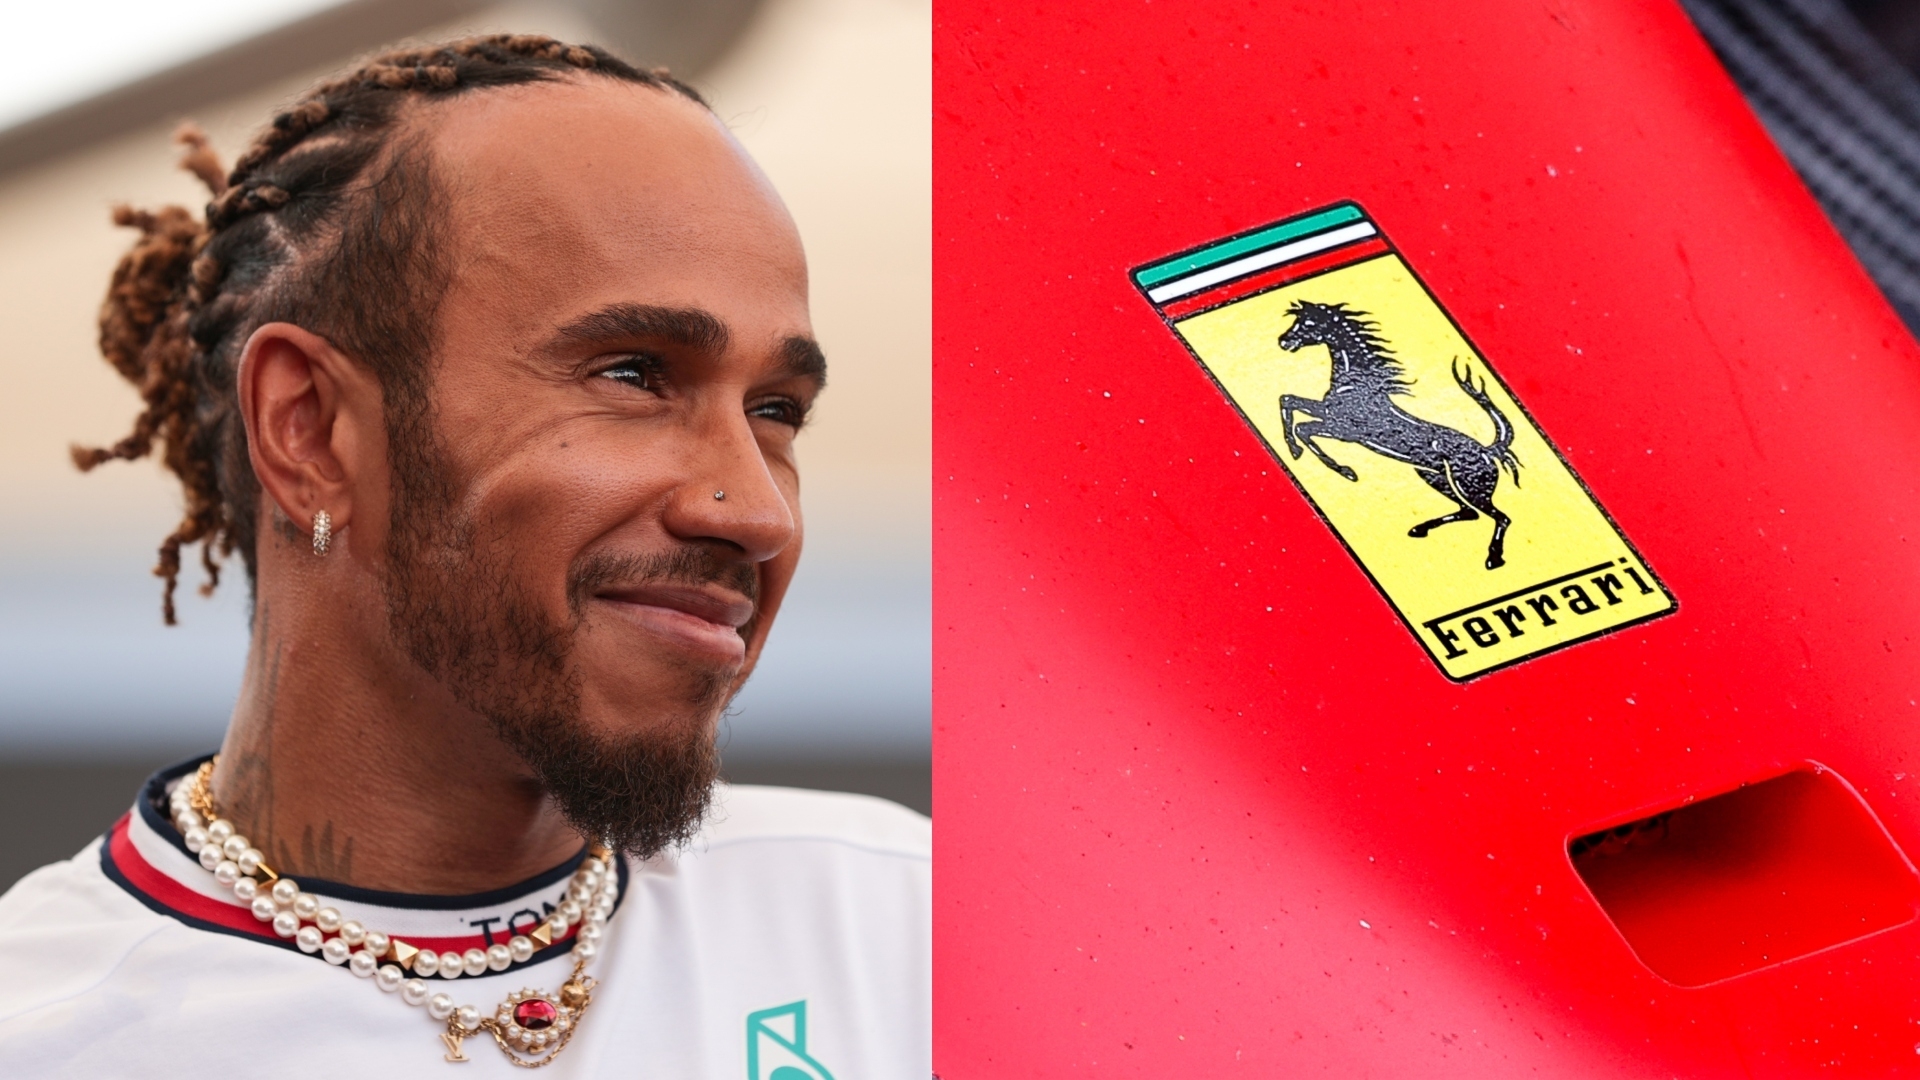 Why Lewis Hamilton's Ferrari move makes sense